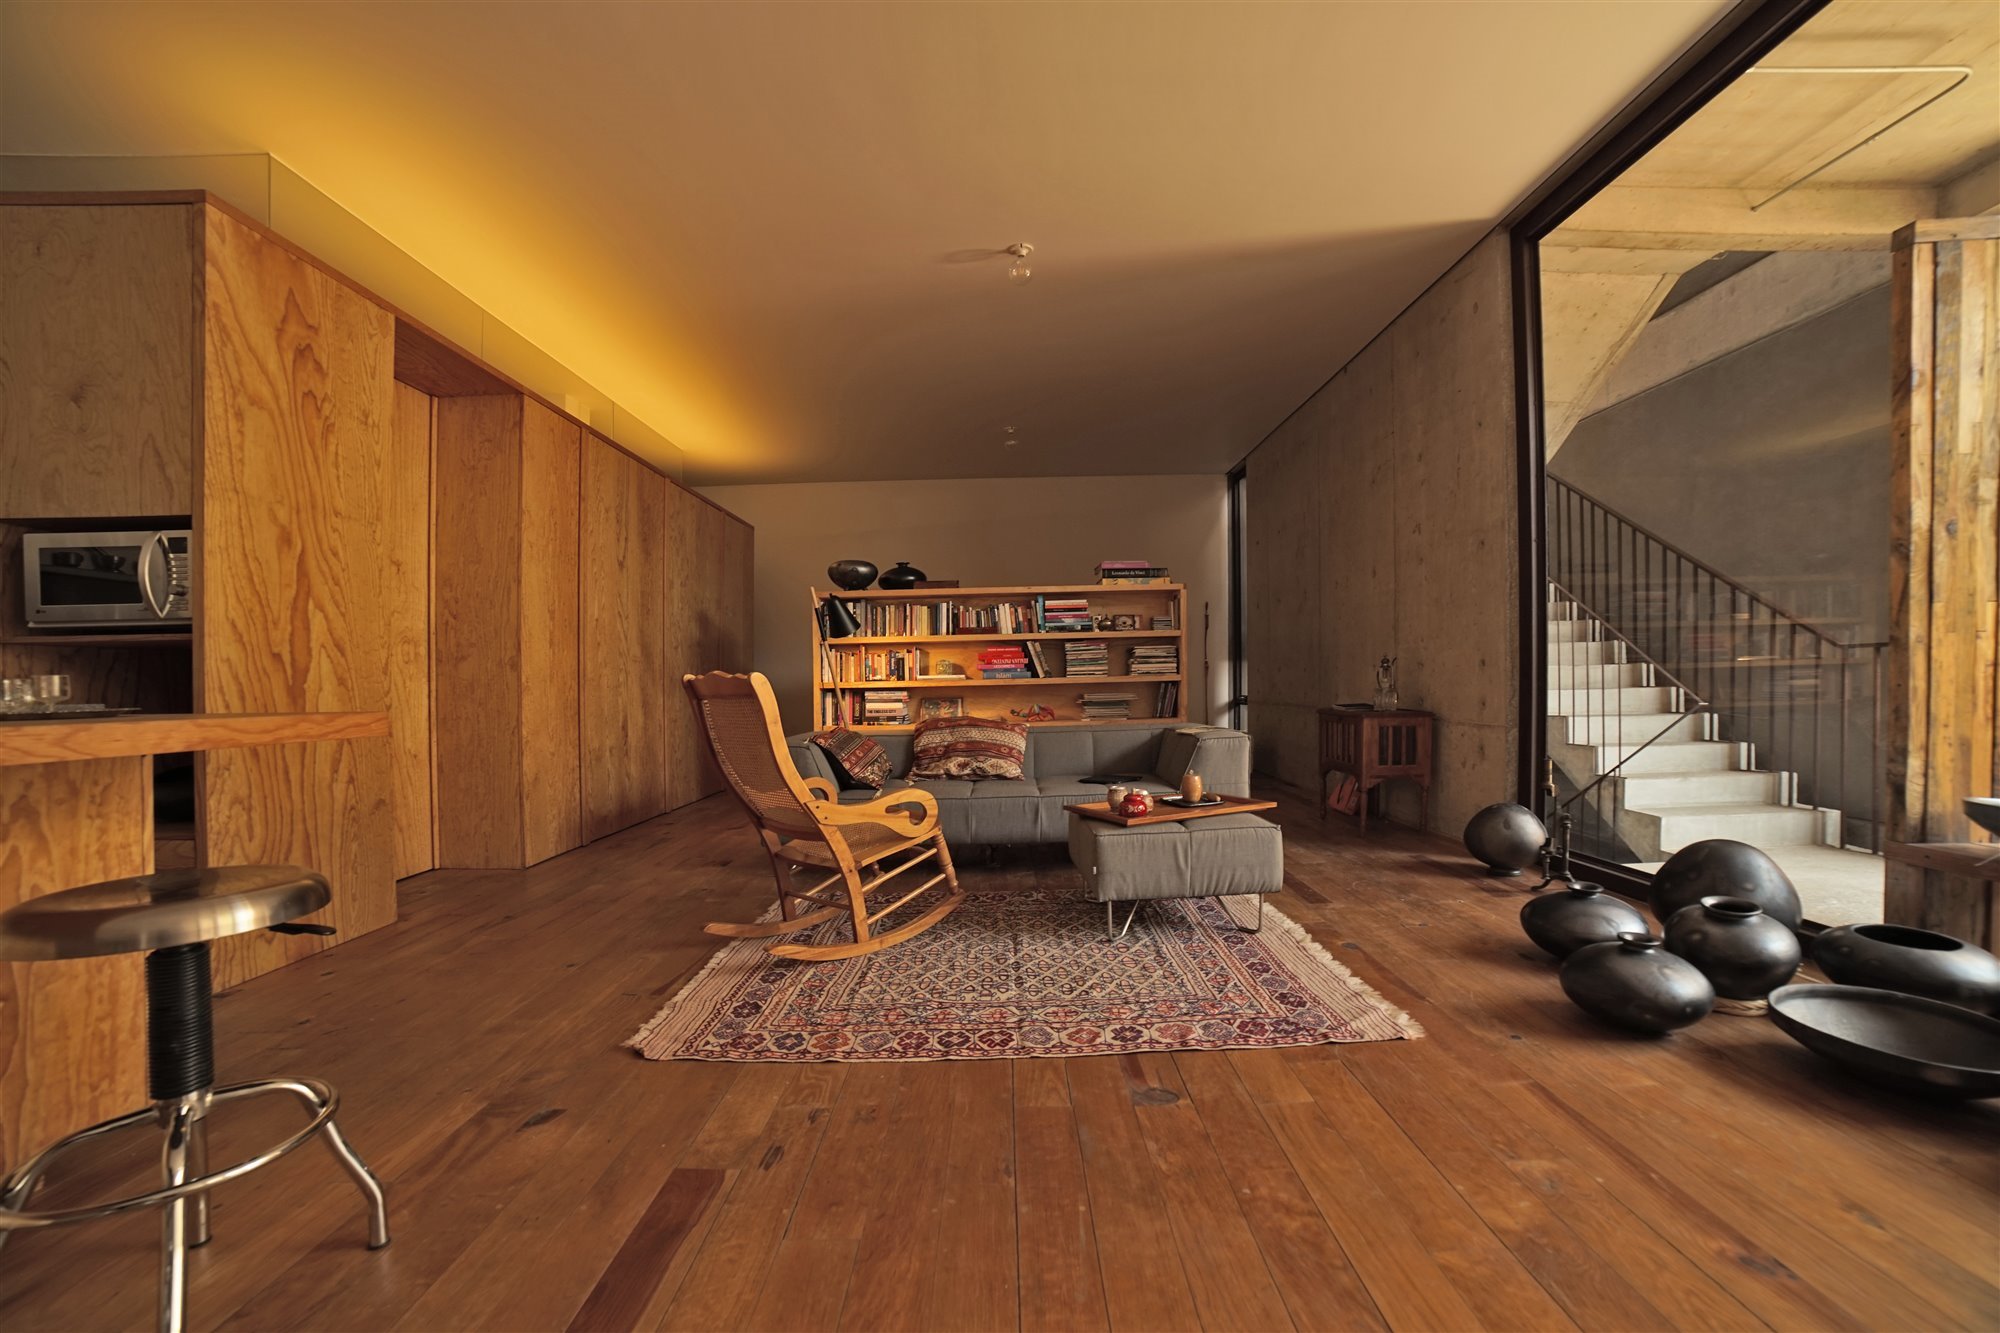 Apartamentos moderns en Mexico de lujo con interiores de madera salon con butaca mecedora